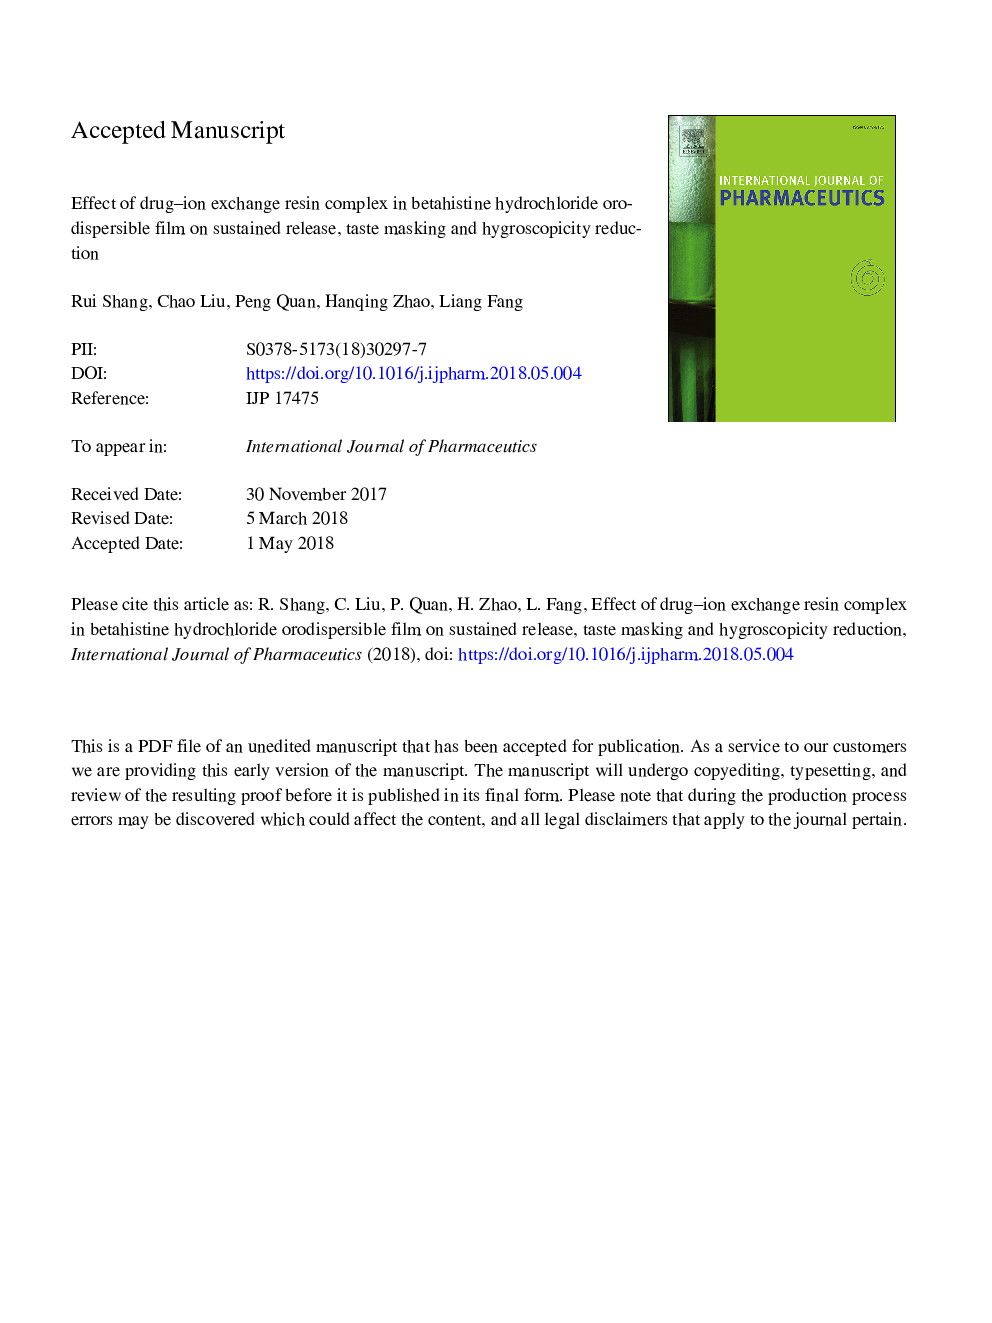 اثر ترکیب رزین مبادله یونی دارو در حشره کش ورید هیدروکلرید بر پخش مداوم، پختن طعم و کاهش میزان هیدروگرافی 